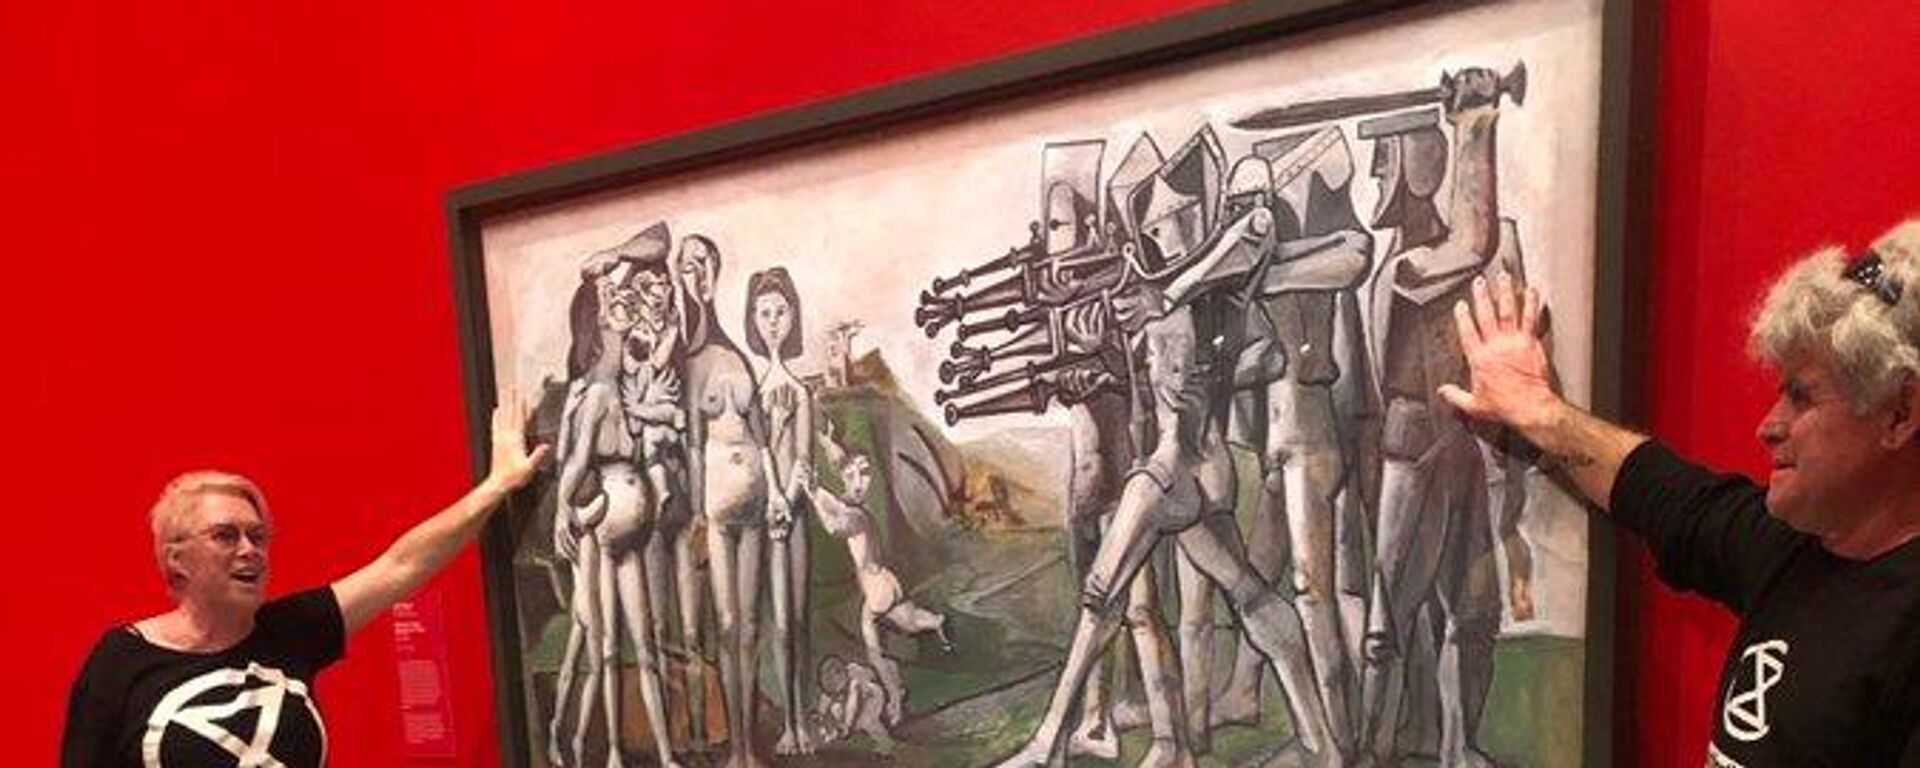 Avustralya'da Yokoluş İsyanı (Extinction Rebellion) adlı çevreci gruptan aktivistler, Pablo Picasso'nun  ABD'nin Kore Savaşı'ndaki politikasını protesto ettiği Kore'de Katliam isimli 1951 tarihli tablosunun cam kaplamasına ellerini zamkla yapıştırdı.  - Sputnik Türkiye, 1920, 11.10.2022